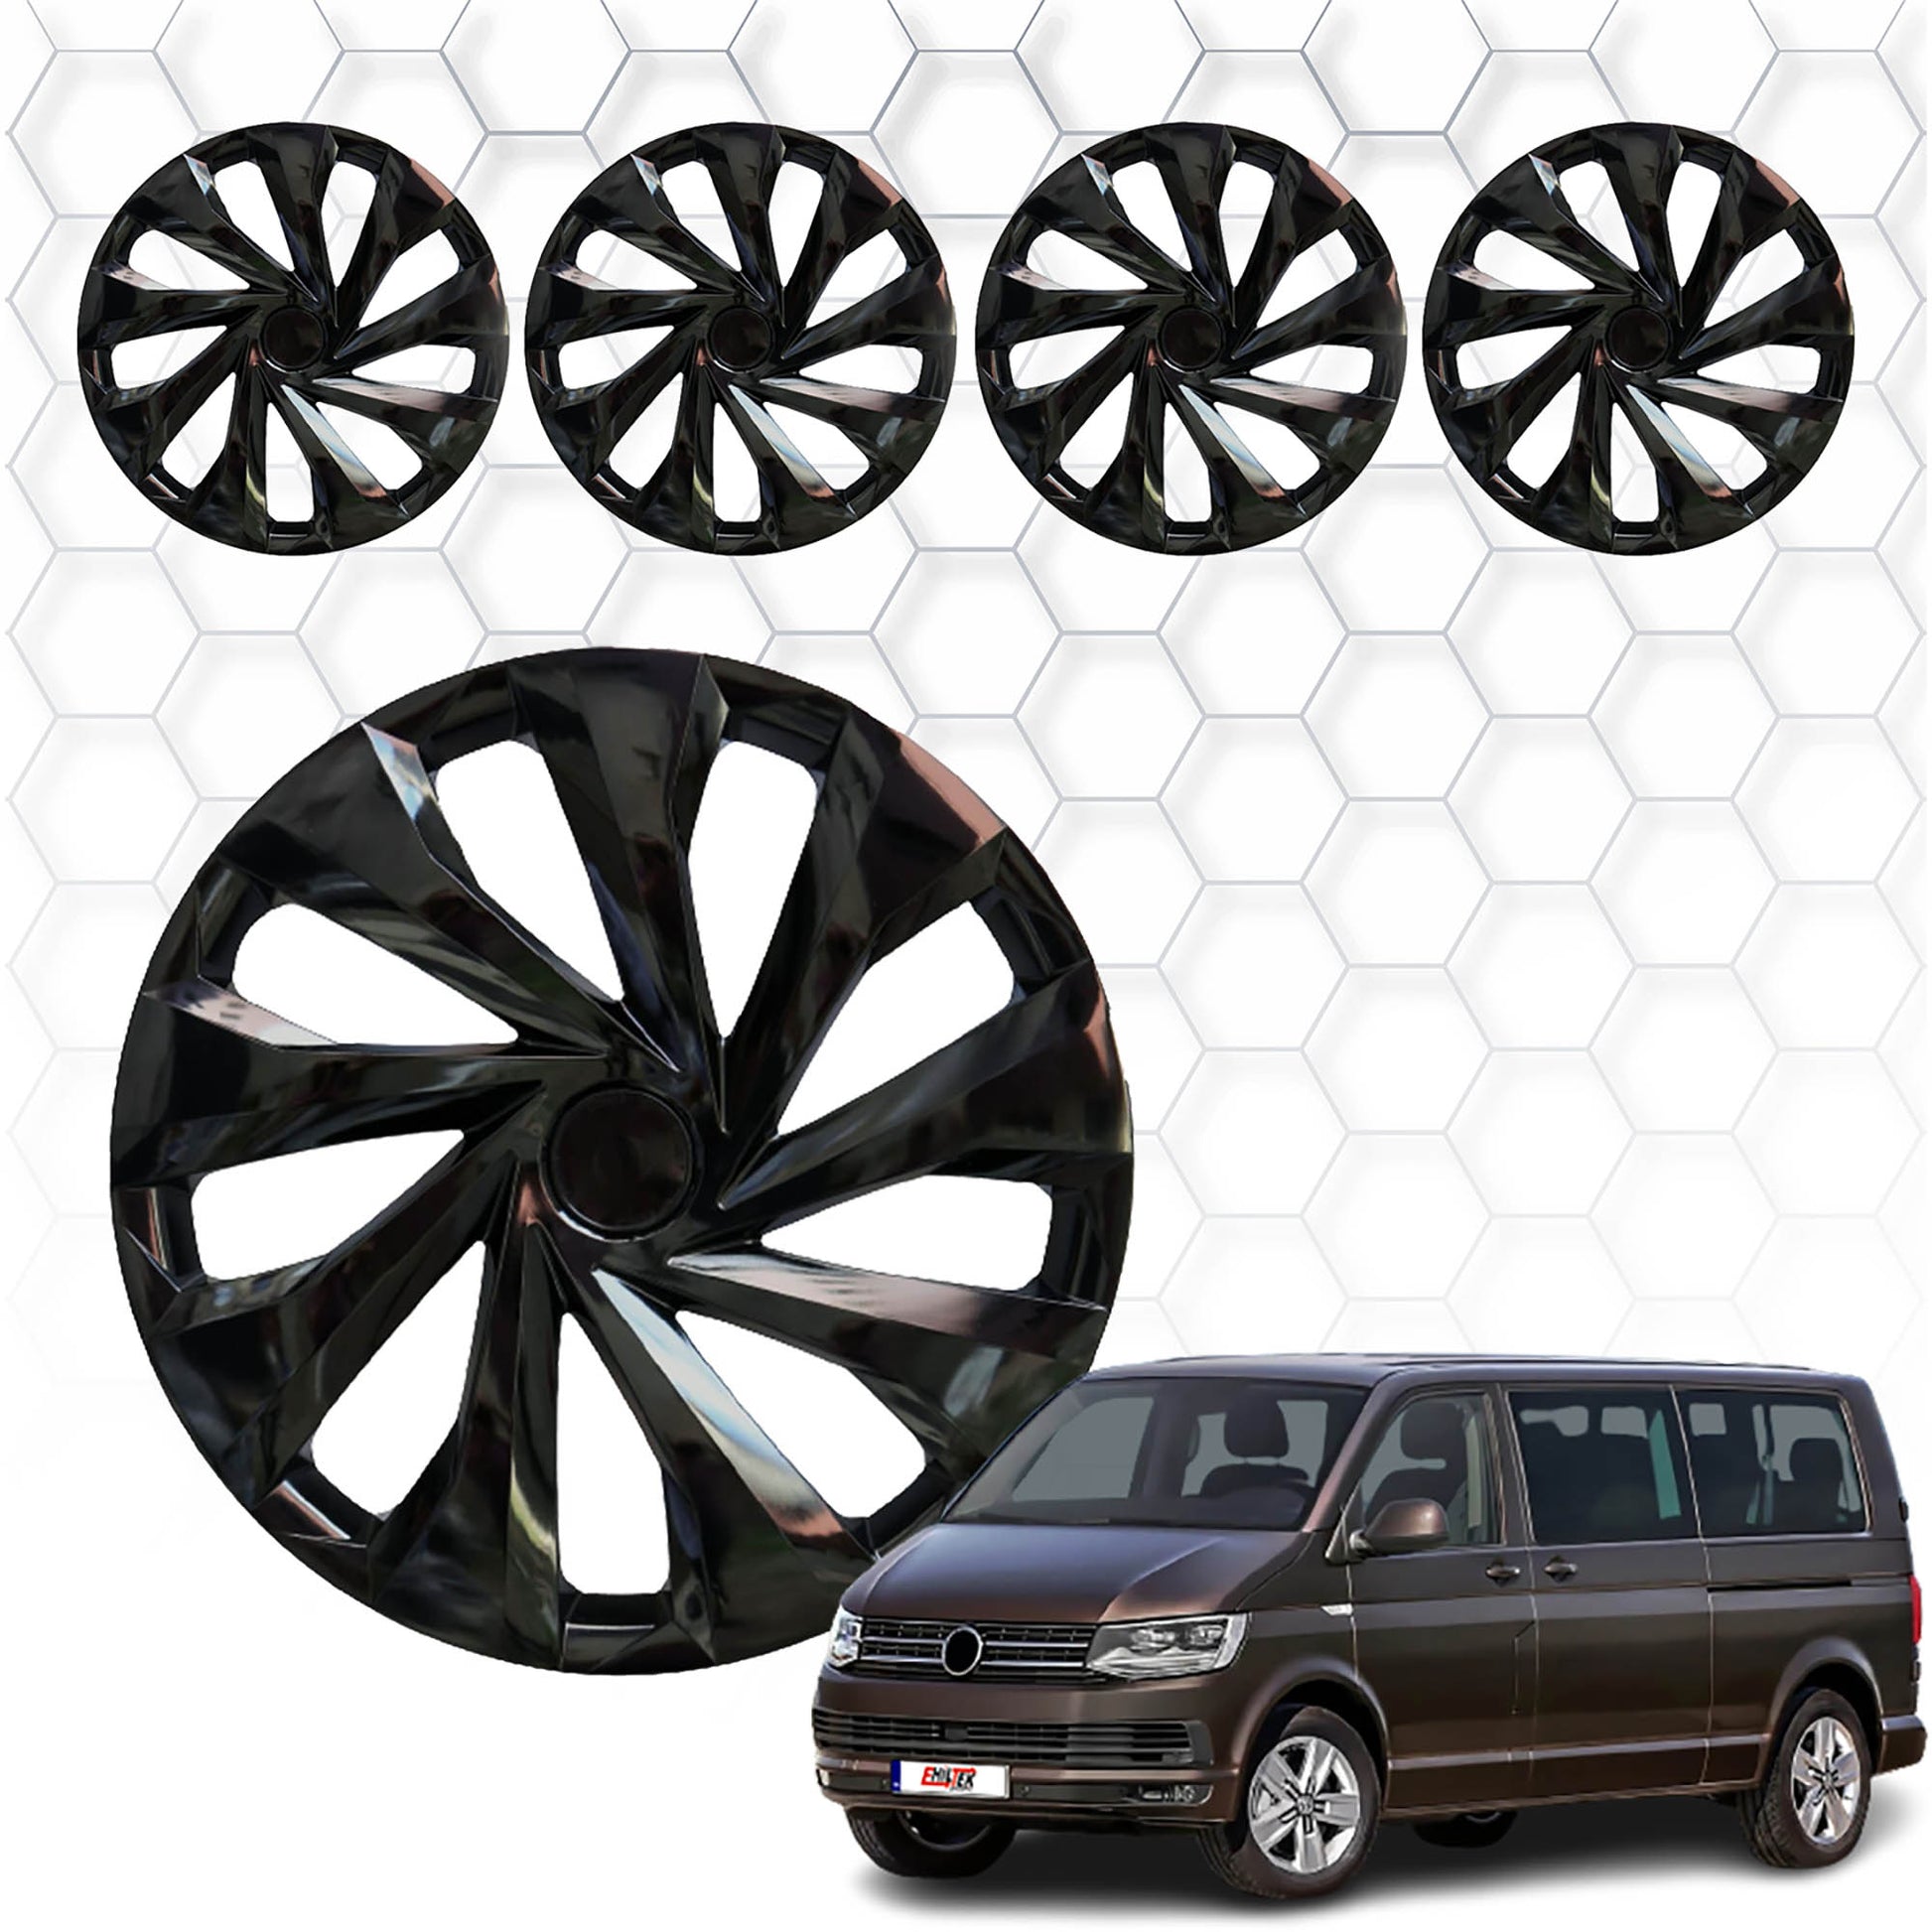 Volkswagen T6 Transporter Jant Kapağı Aksesuarları Detaylı Resimleri, Kampanya bilgileri ve fiyatı - 1